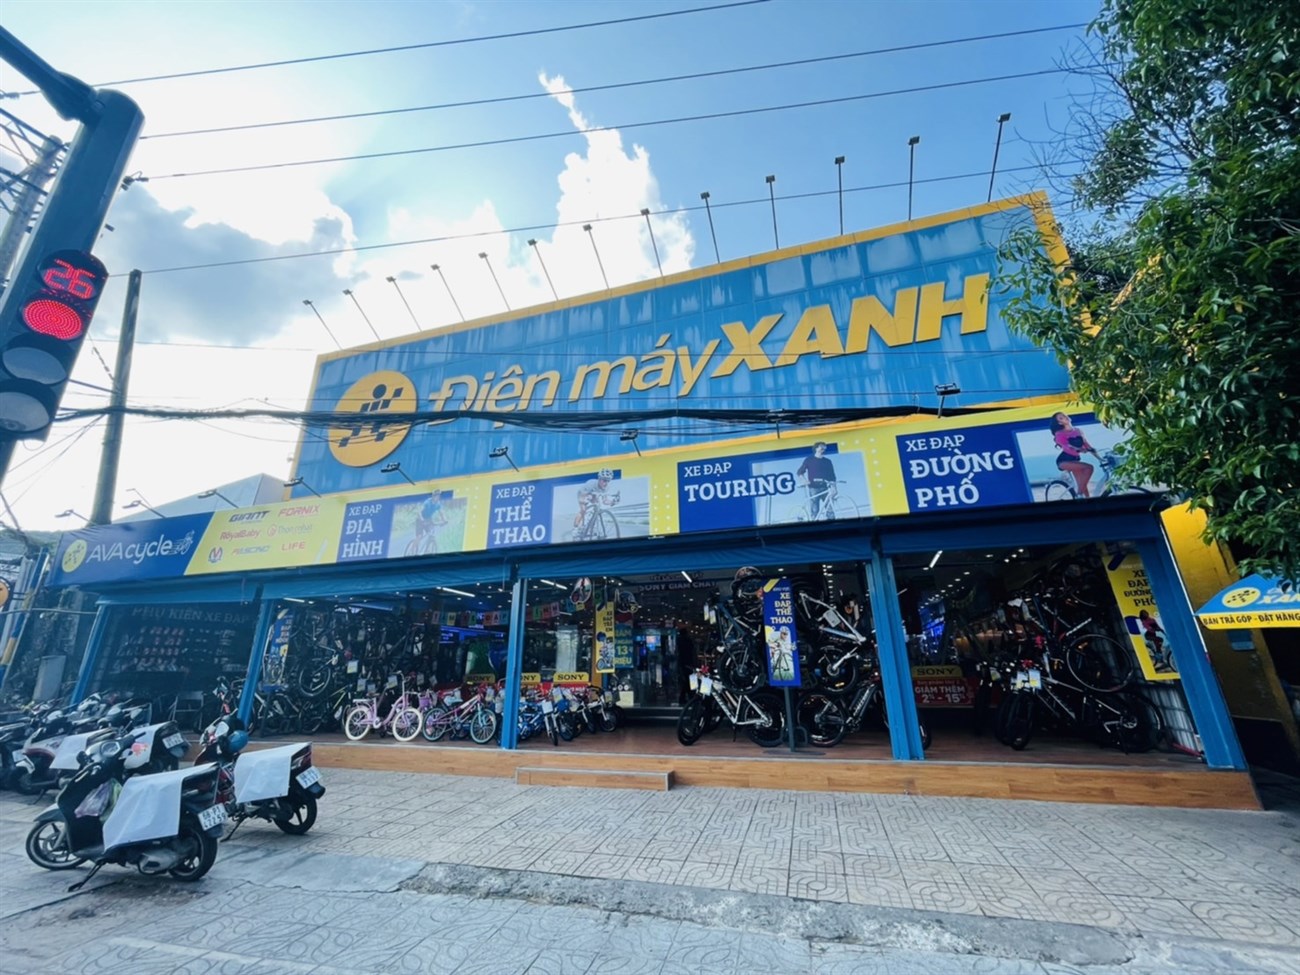 Điện máy XANH 162 đường 30/4 tại TP. Phú Quốc , Kiên Giang thông tin địa chỉ, số điện thoại